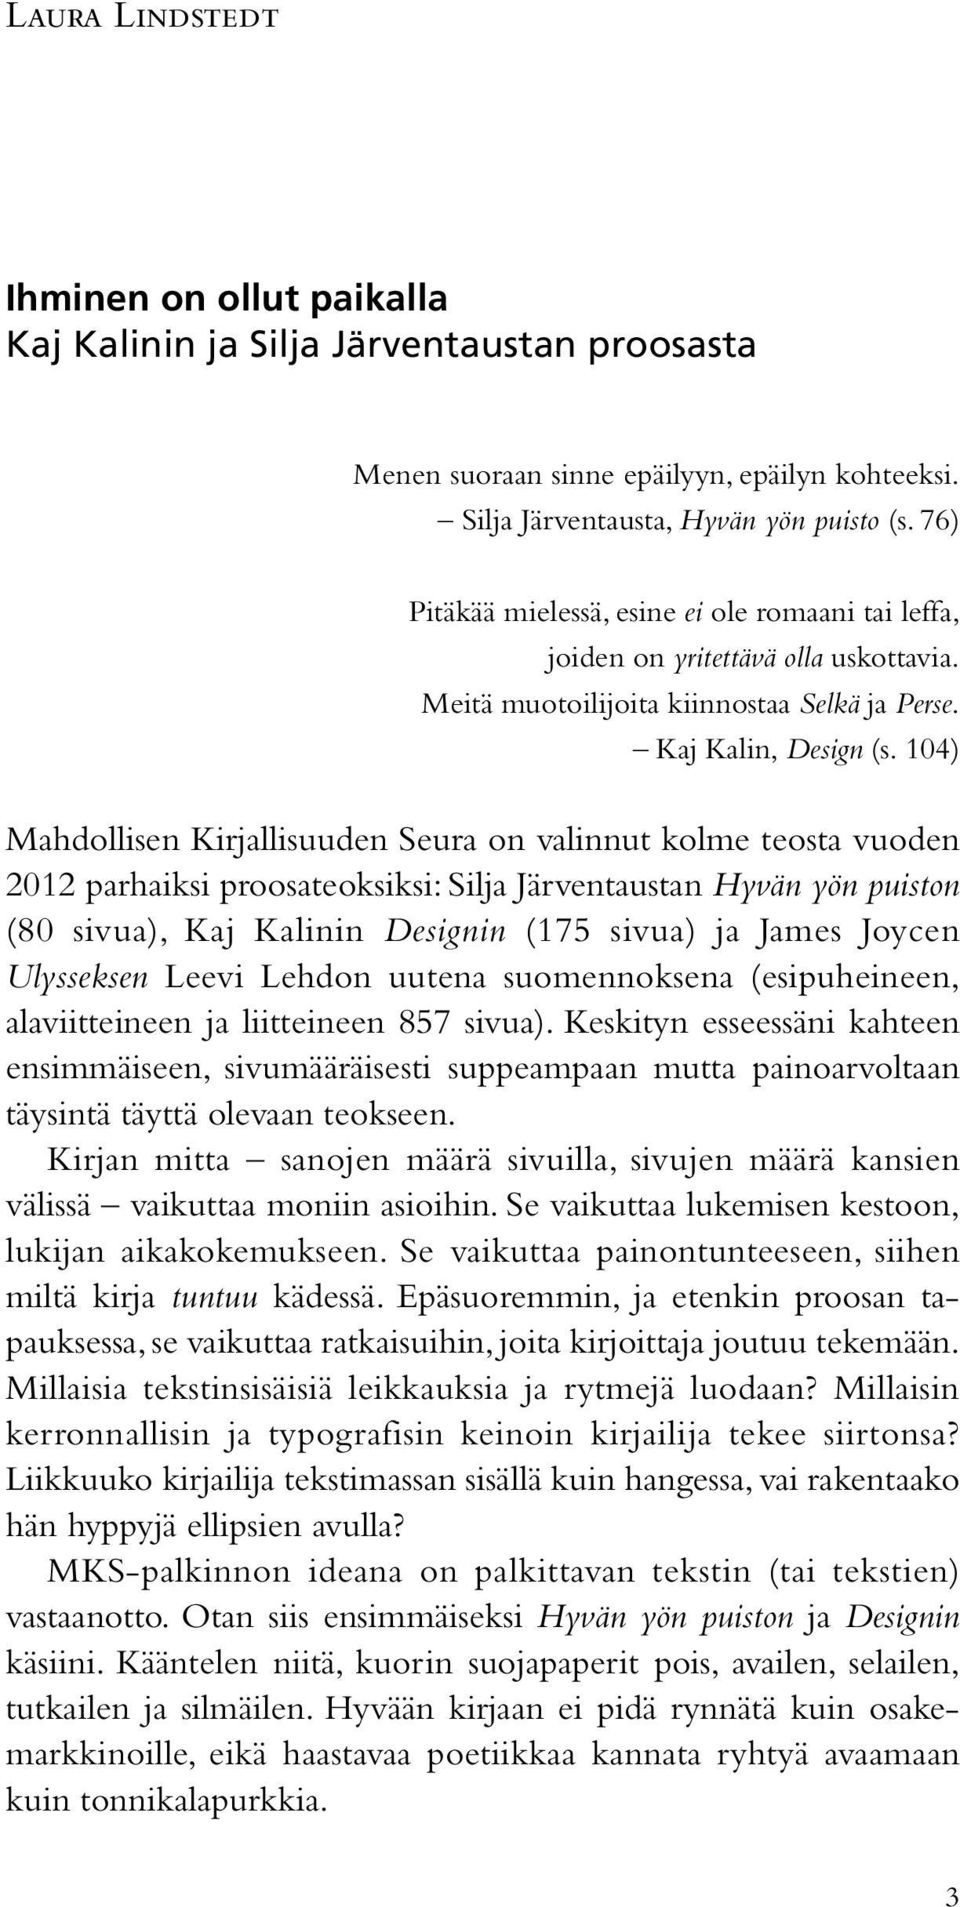 104) Mahdollisen Kirjallisuuden Seura on valinnut kolme teosta vuoden 2012 parhaiksi proosateoksiksi: Silja Järventaustan Hyvän yön puiston (80 sivua), Kaj Kalinin Designin (175 sivua) ja James